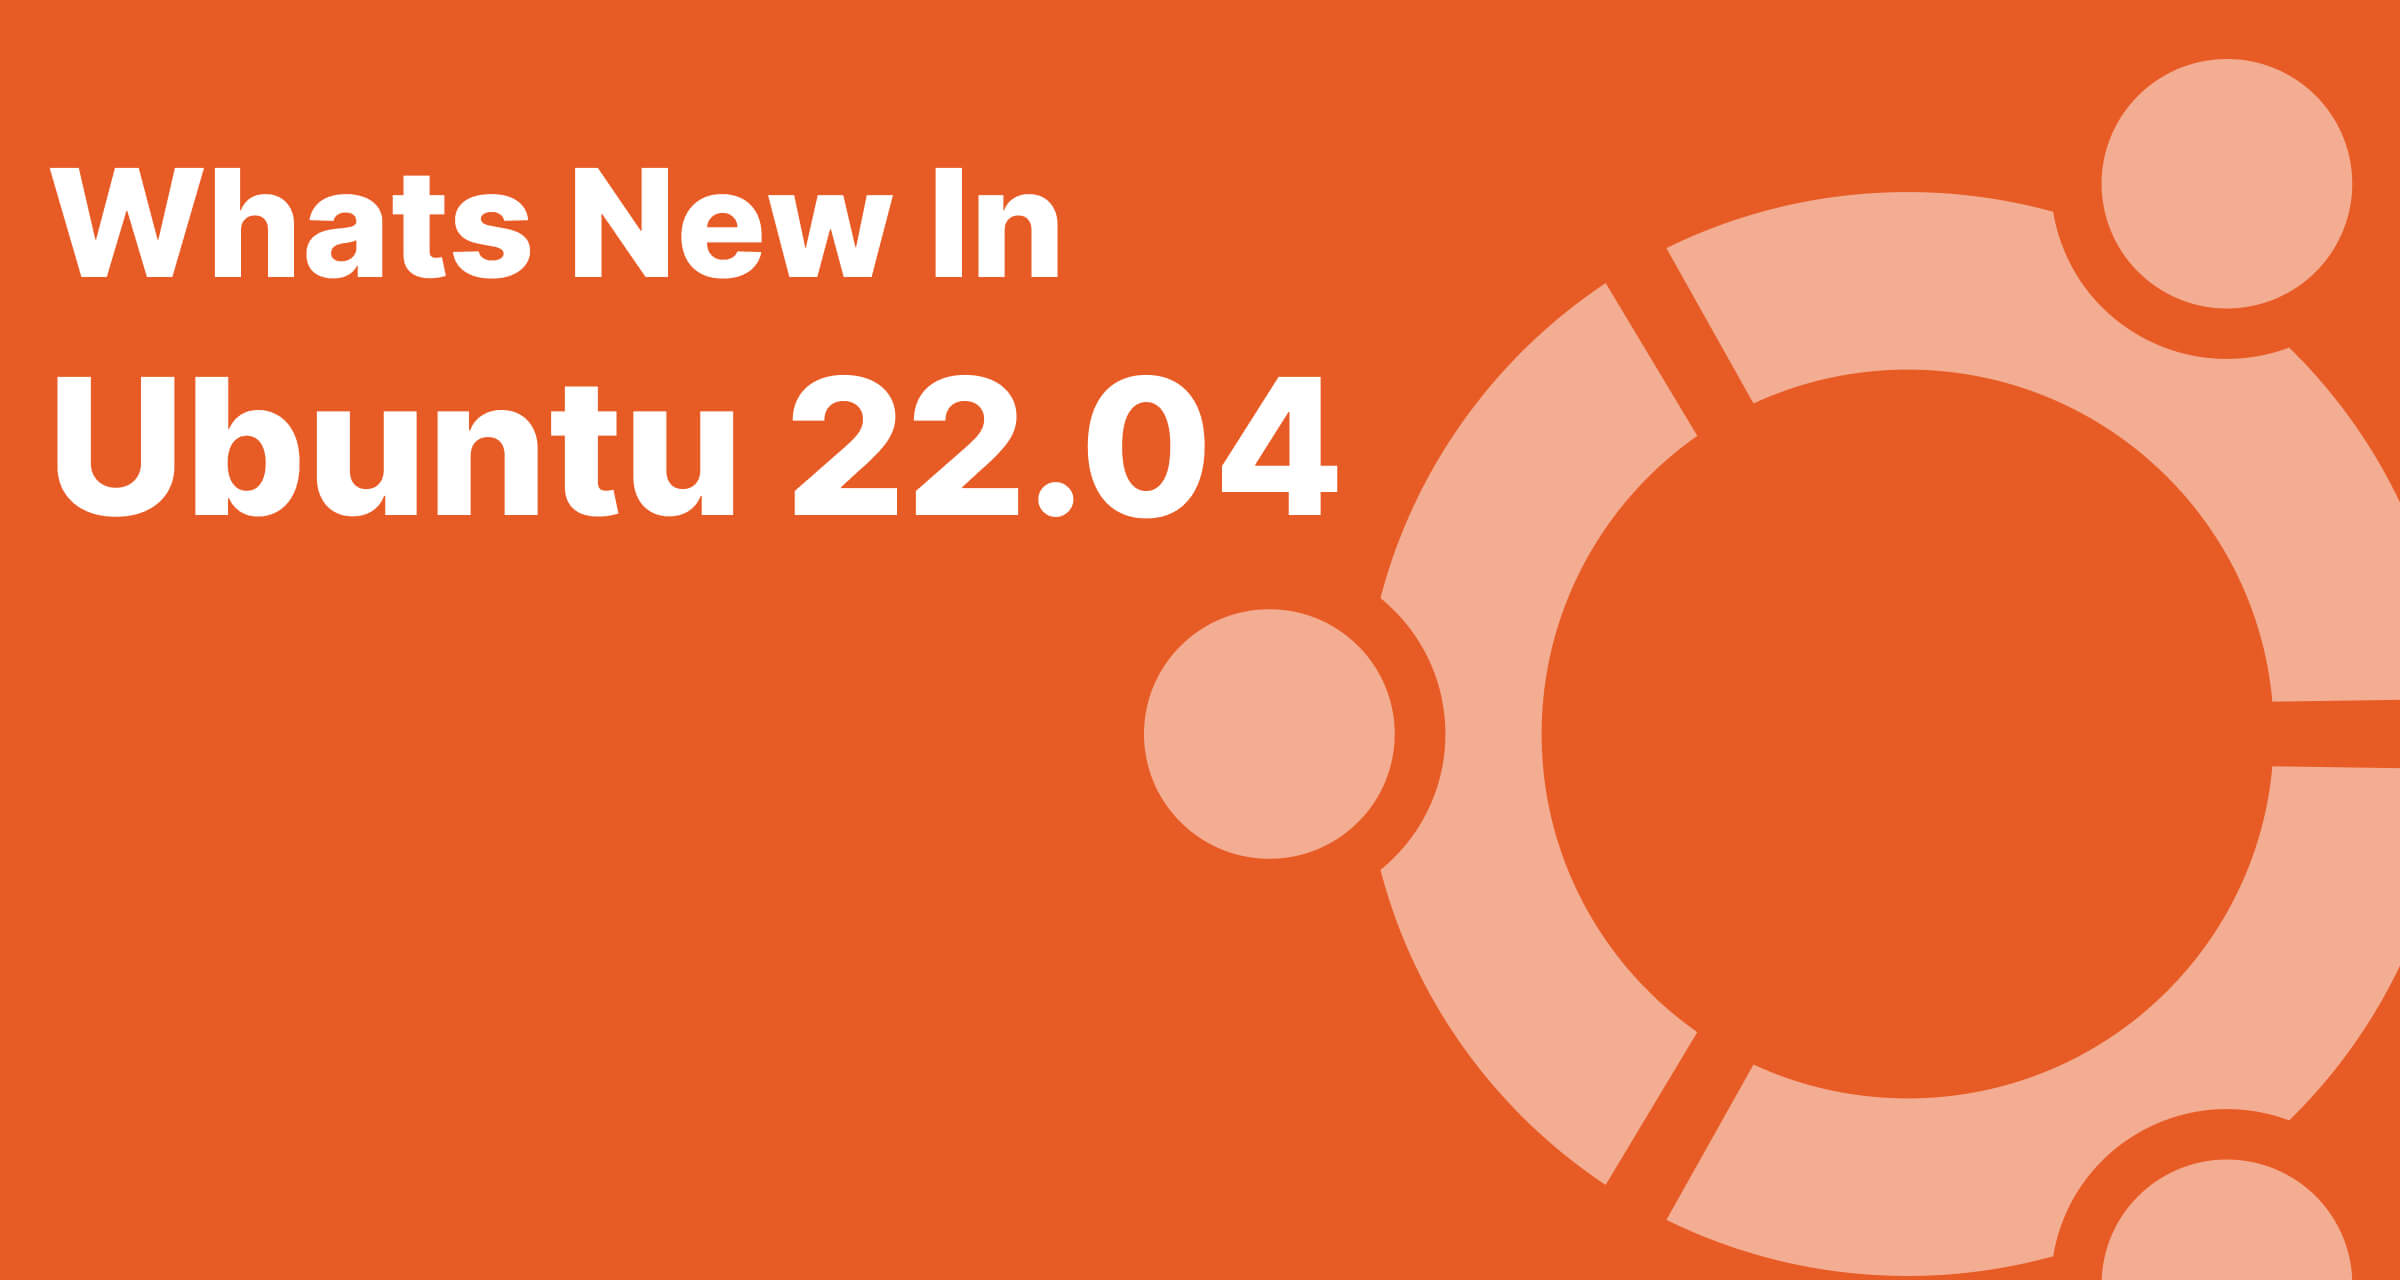 Whats new in Ubuntu 22.04